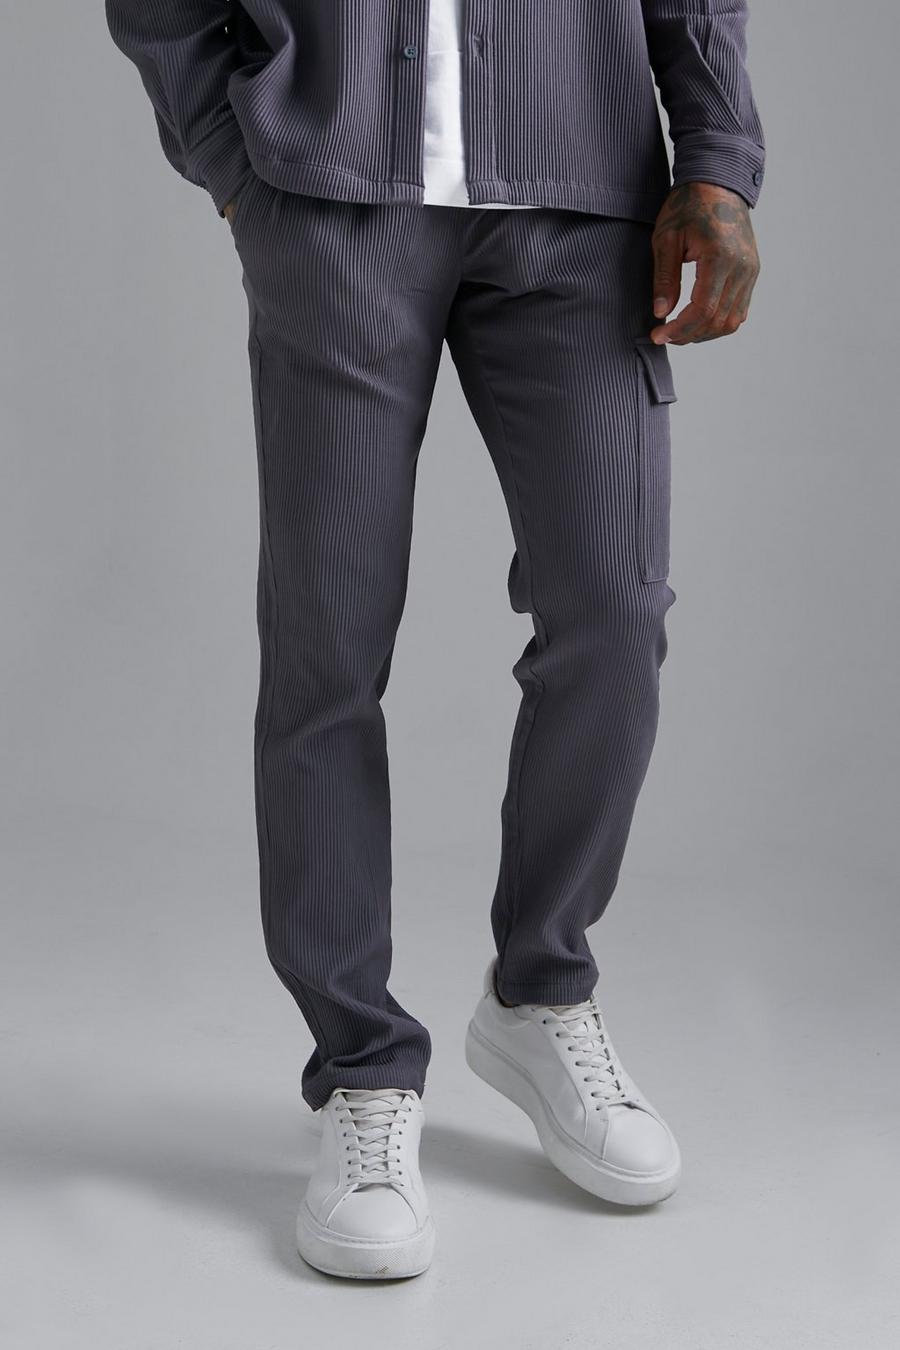 Pantalón pesquero plisado ajustado, Dark grey grigio image number 1